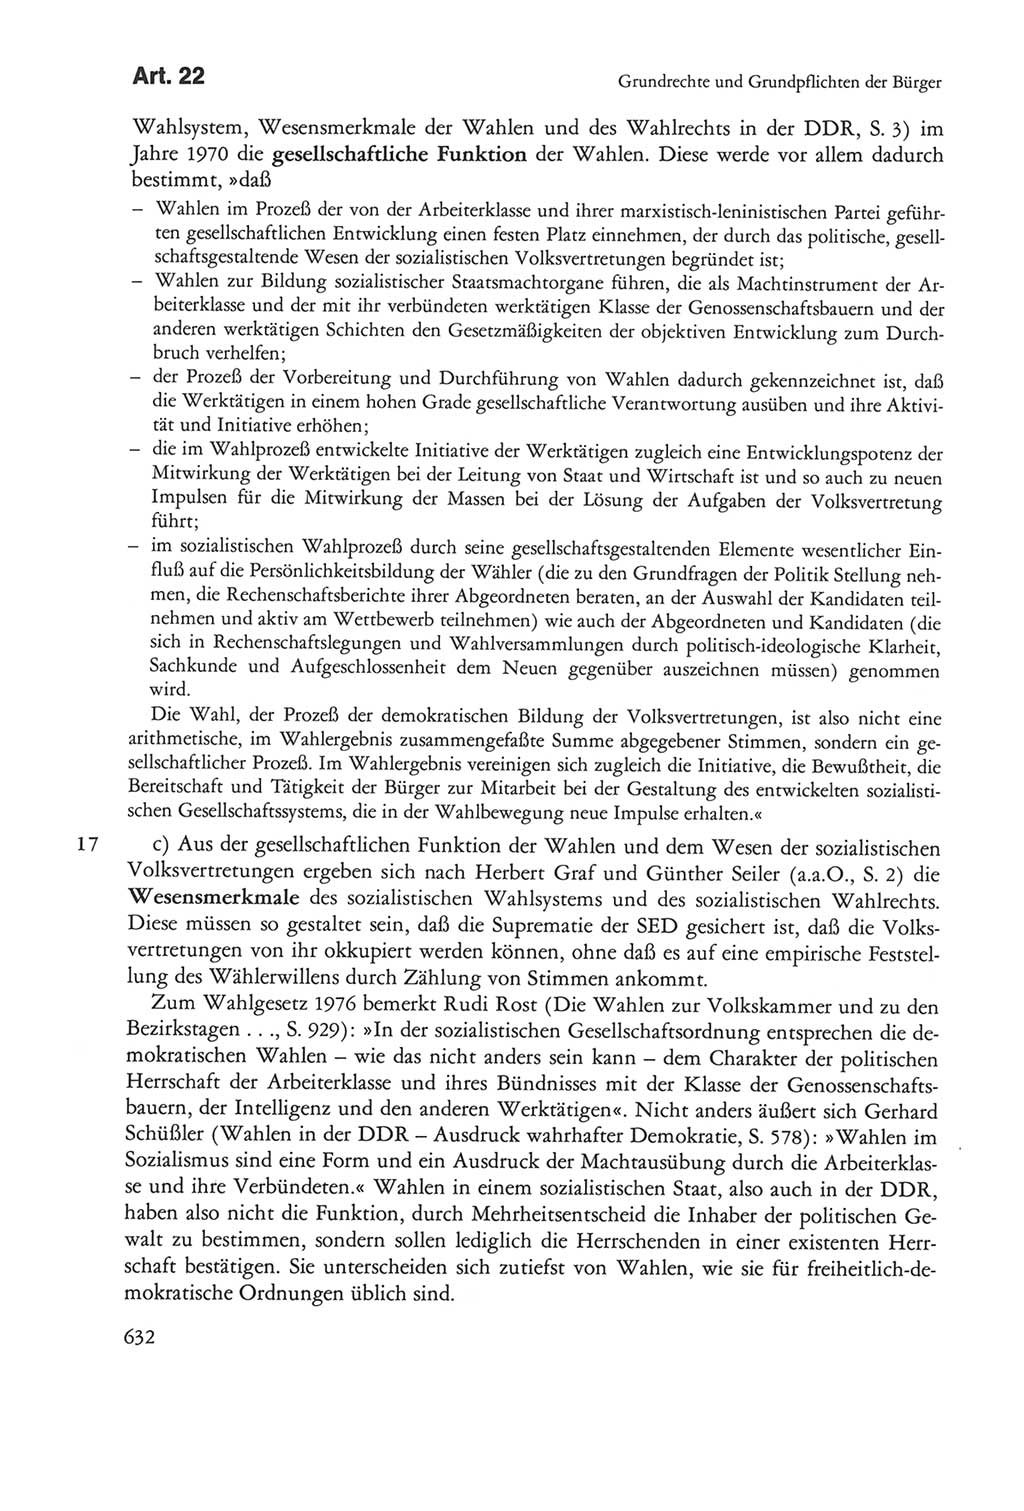 Die sozialistische Verfassung der Deutschen Demokratischen Republik (DDR), Kommentar mit einem Nachtrag 1997, Seite 632 (Soz. Verf. DDR Komm. Nachtr. 1997, S. 632)